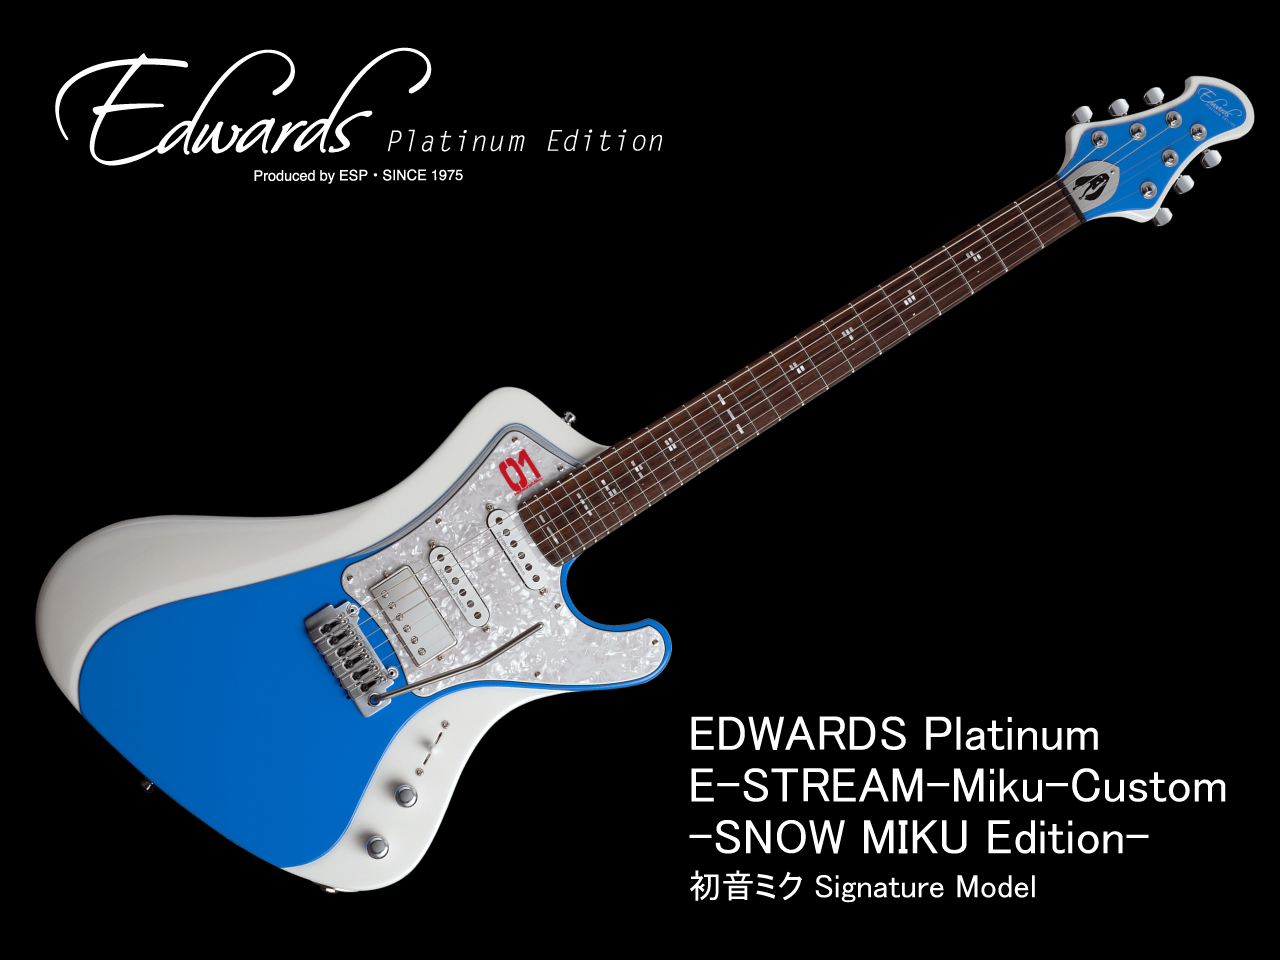 【2023年2月4日10時より受注開始】EDWARDS Platinum E-STREAM-Miku-Custom -SNOW MIKU Edition- (初音ミク Signature Model)